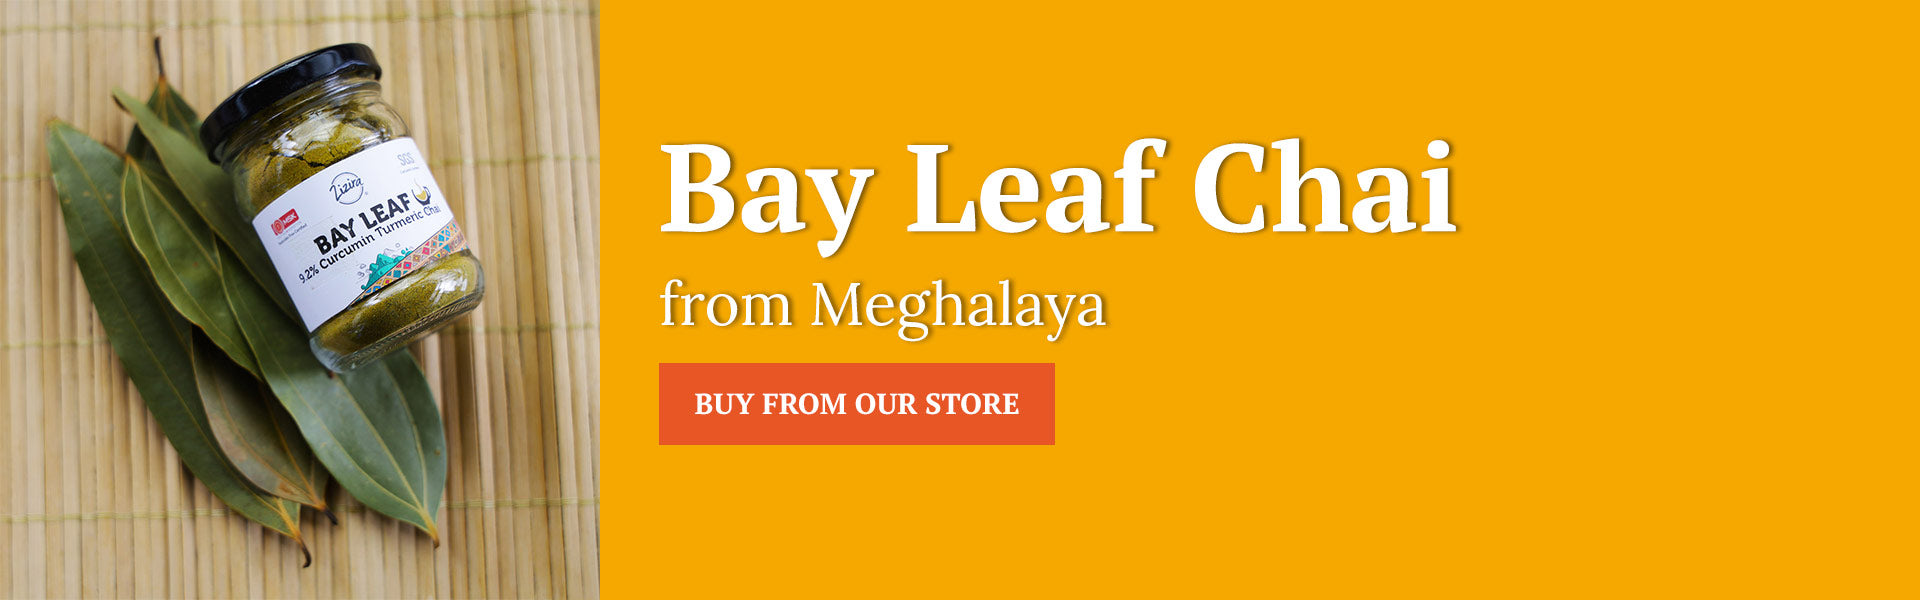 Bay Leaf Chai Website